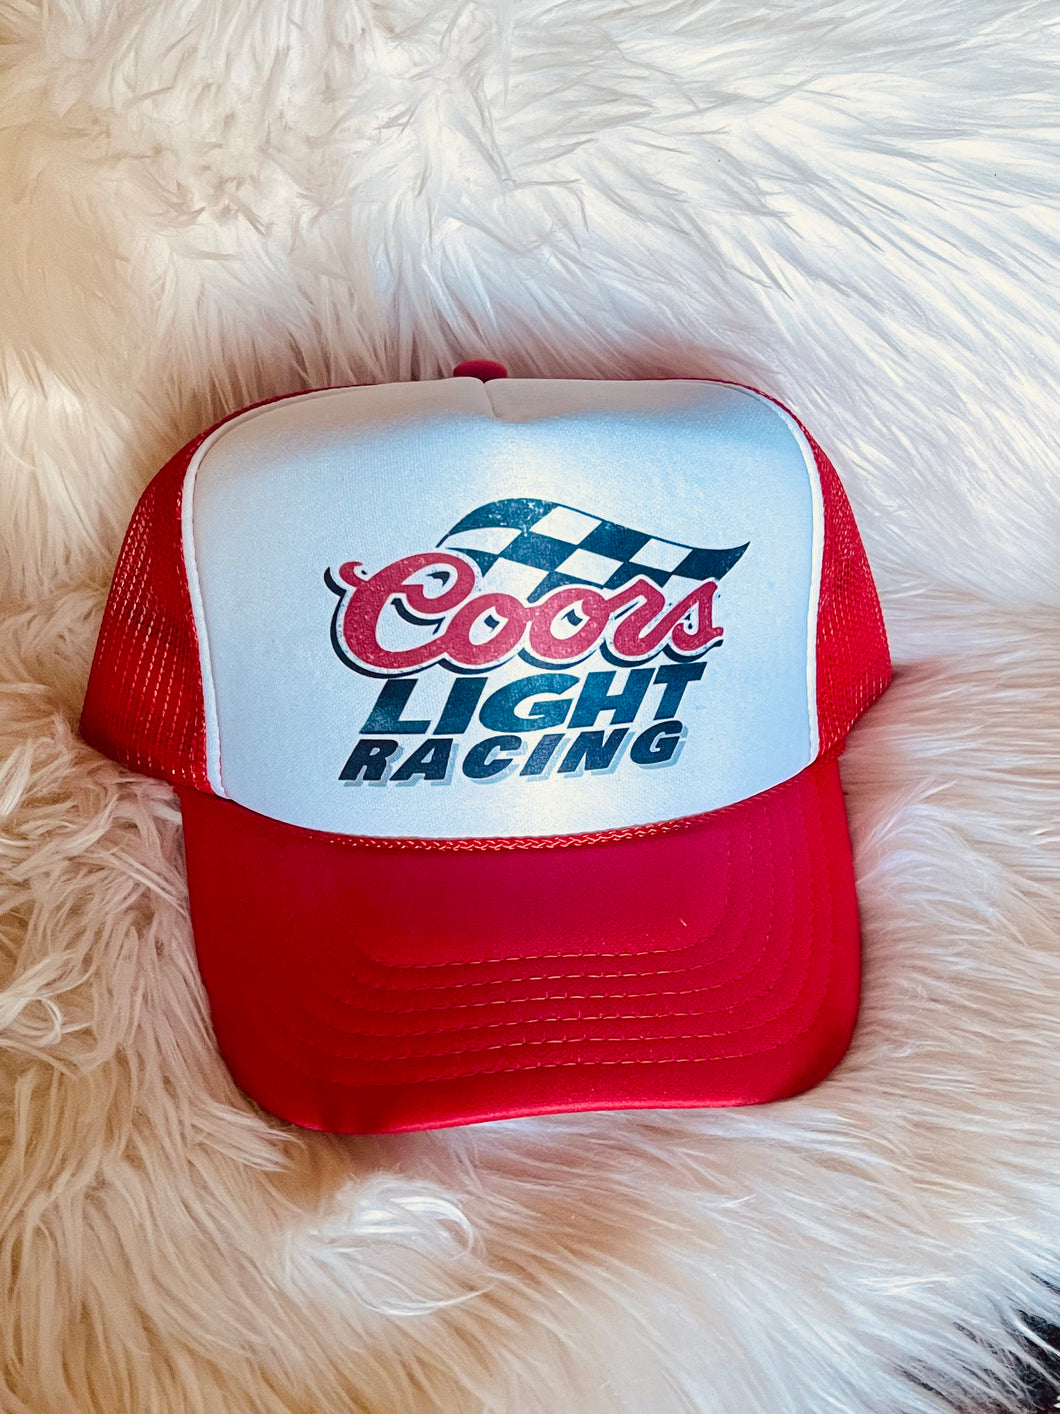 Coors Light Racing Trucker Hat